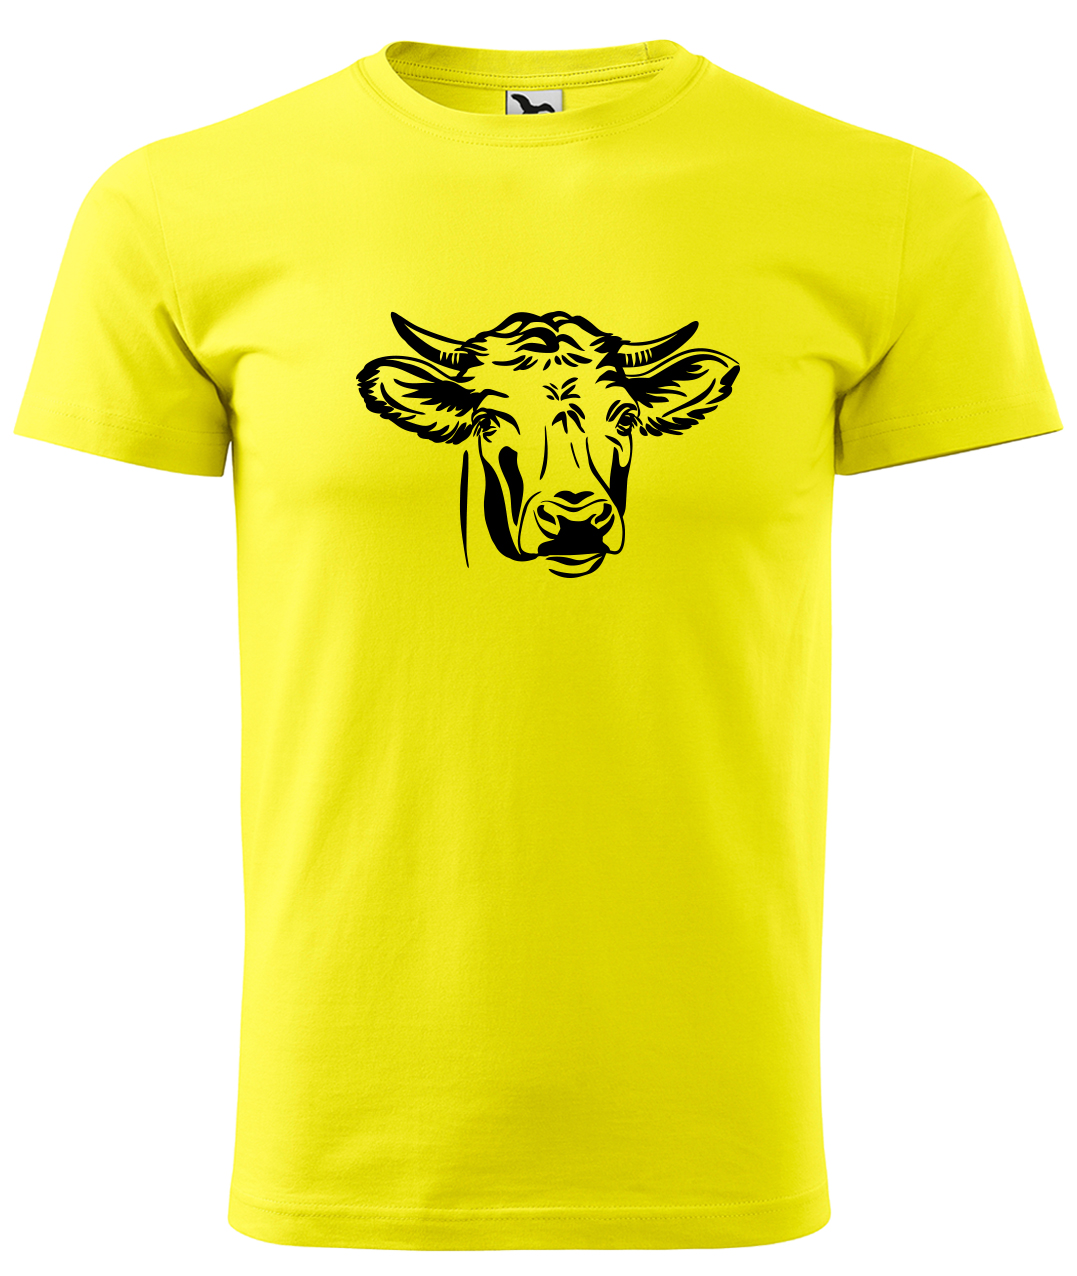 Dětské tričko s krávou - Hlava krávy Velikost: 4 roky / 110 cm, Barva: Žlutá (04), Délka rukávu: Krátký rukáv